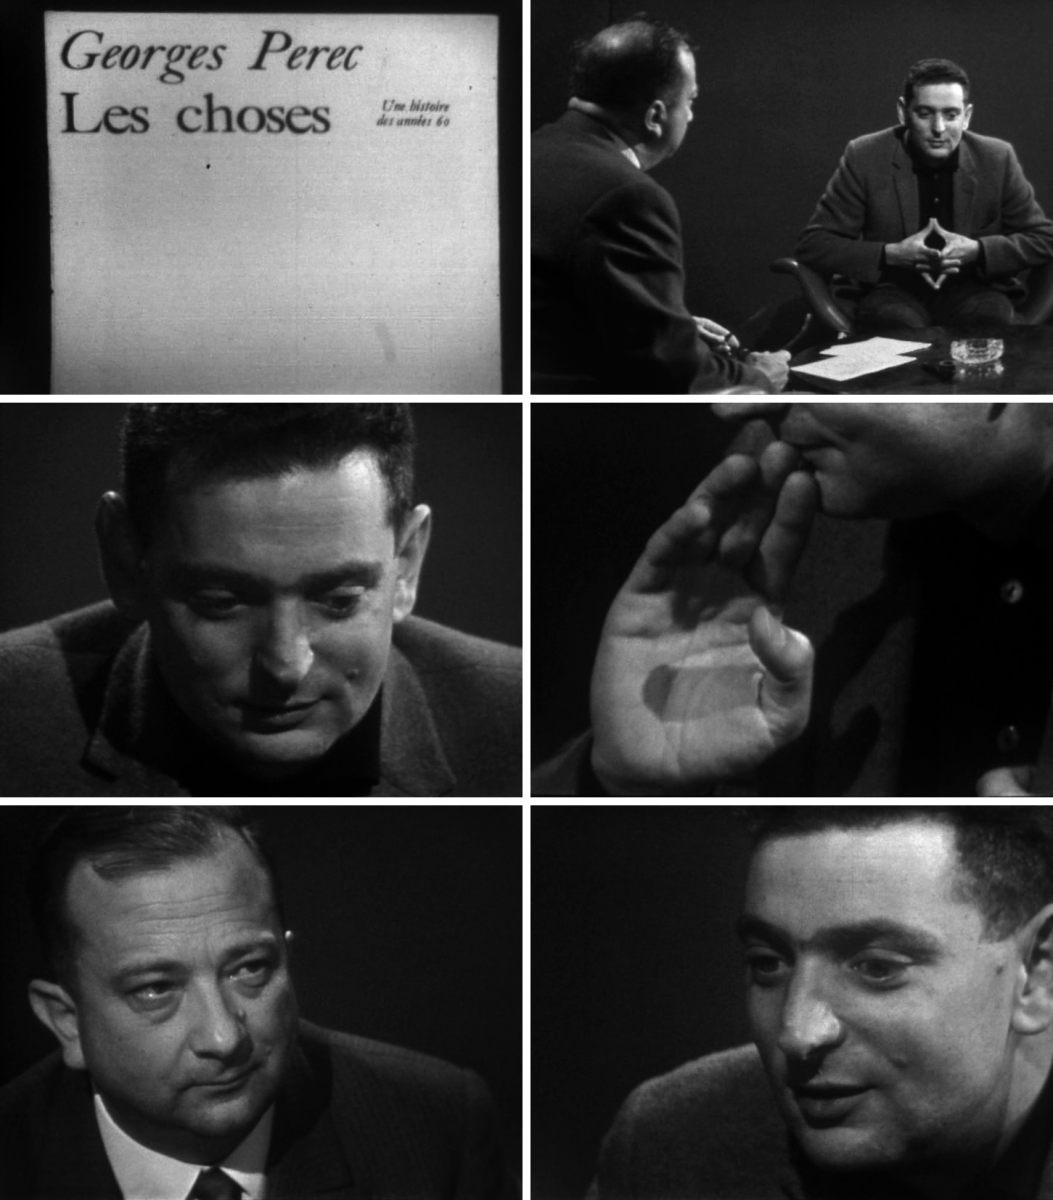 Pierre Dumayet interviewe Georges Perec pour un épisode de Lectures pour tous de 1965